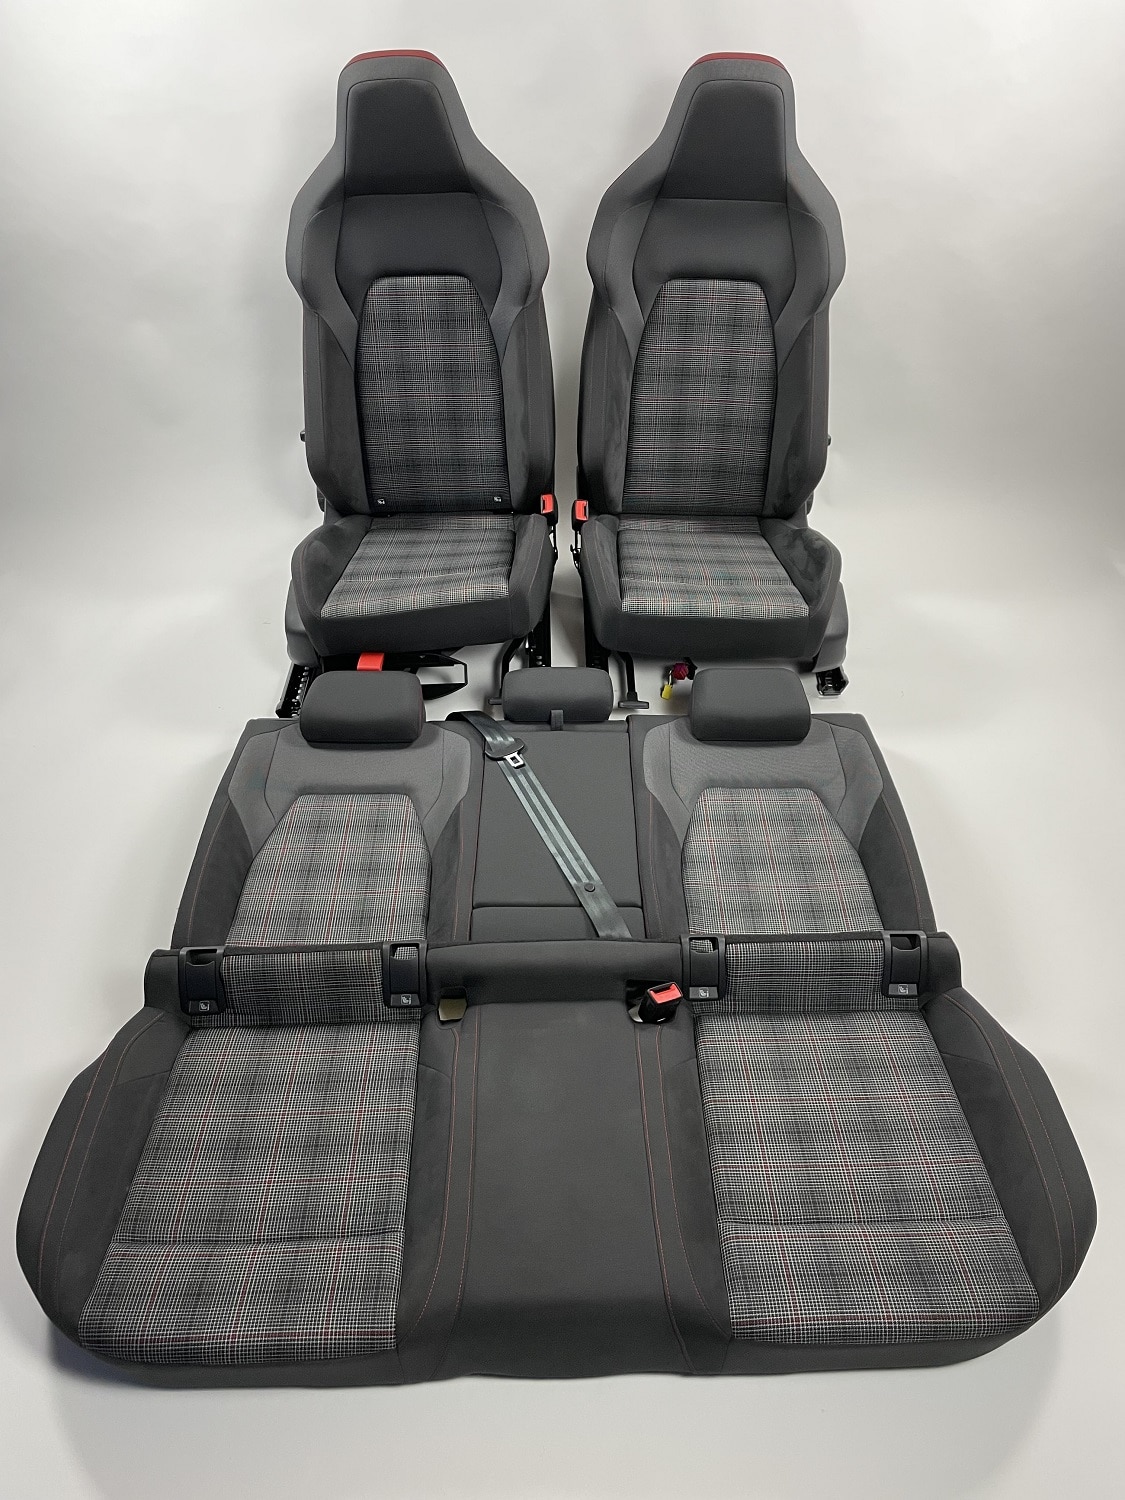 Commander l'intérieur de la VW Golf 8 GTI Alcantara/Fabric Rouge/Blanc/Gris  en ligne chez Carseatz